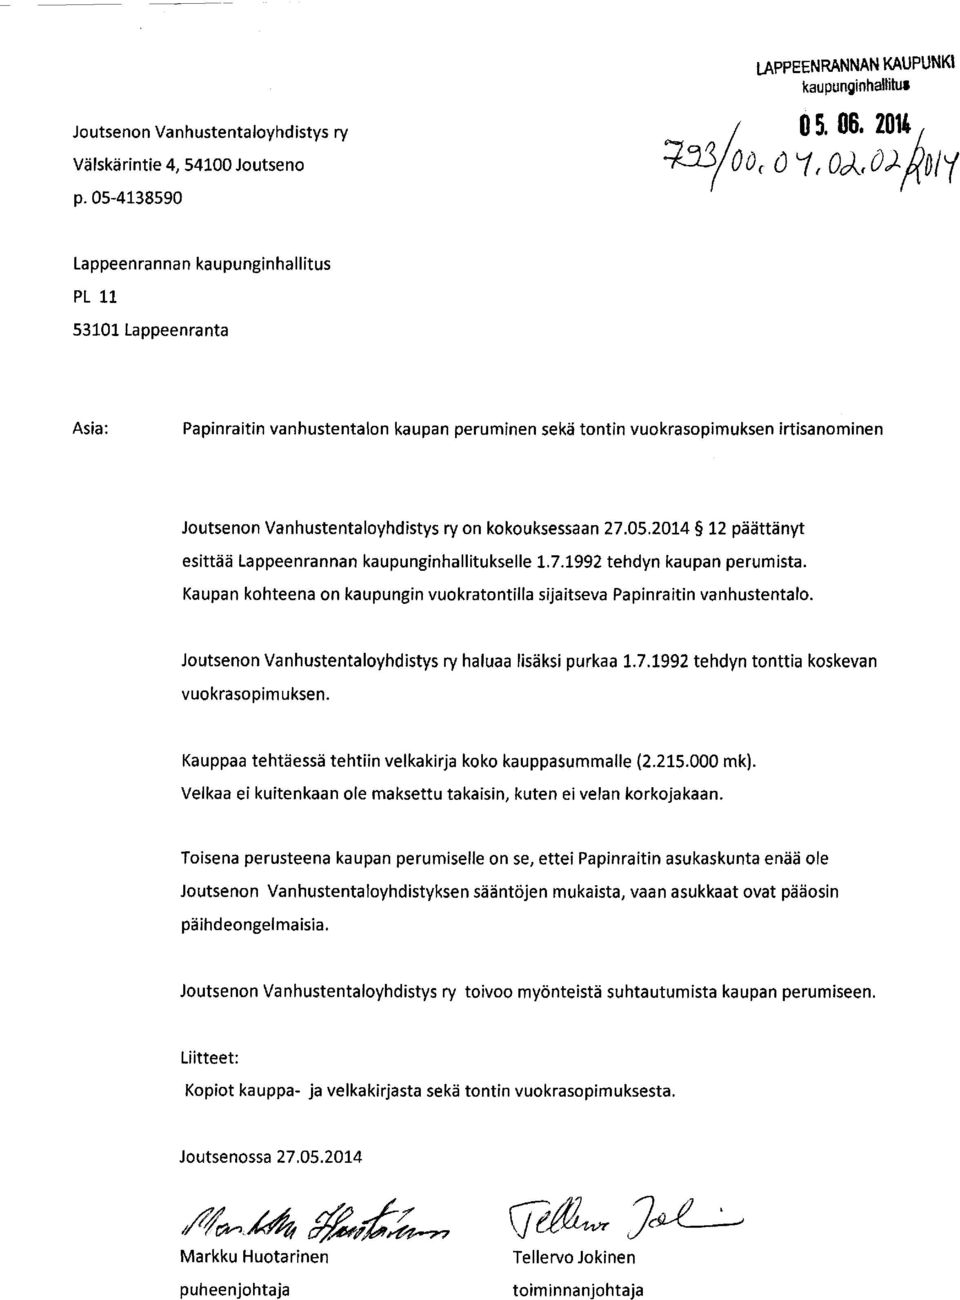 kokouksessaan 27.05.2014 12 päättänyt esittää Lappeenrannan kaupunginhallitukselle 1.7.1992 tehdyn kaupan perumista. Kaupan kohteena on kaupungin vuokratontilla sijaitseva Papinraitin vanhustentalo.